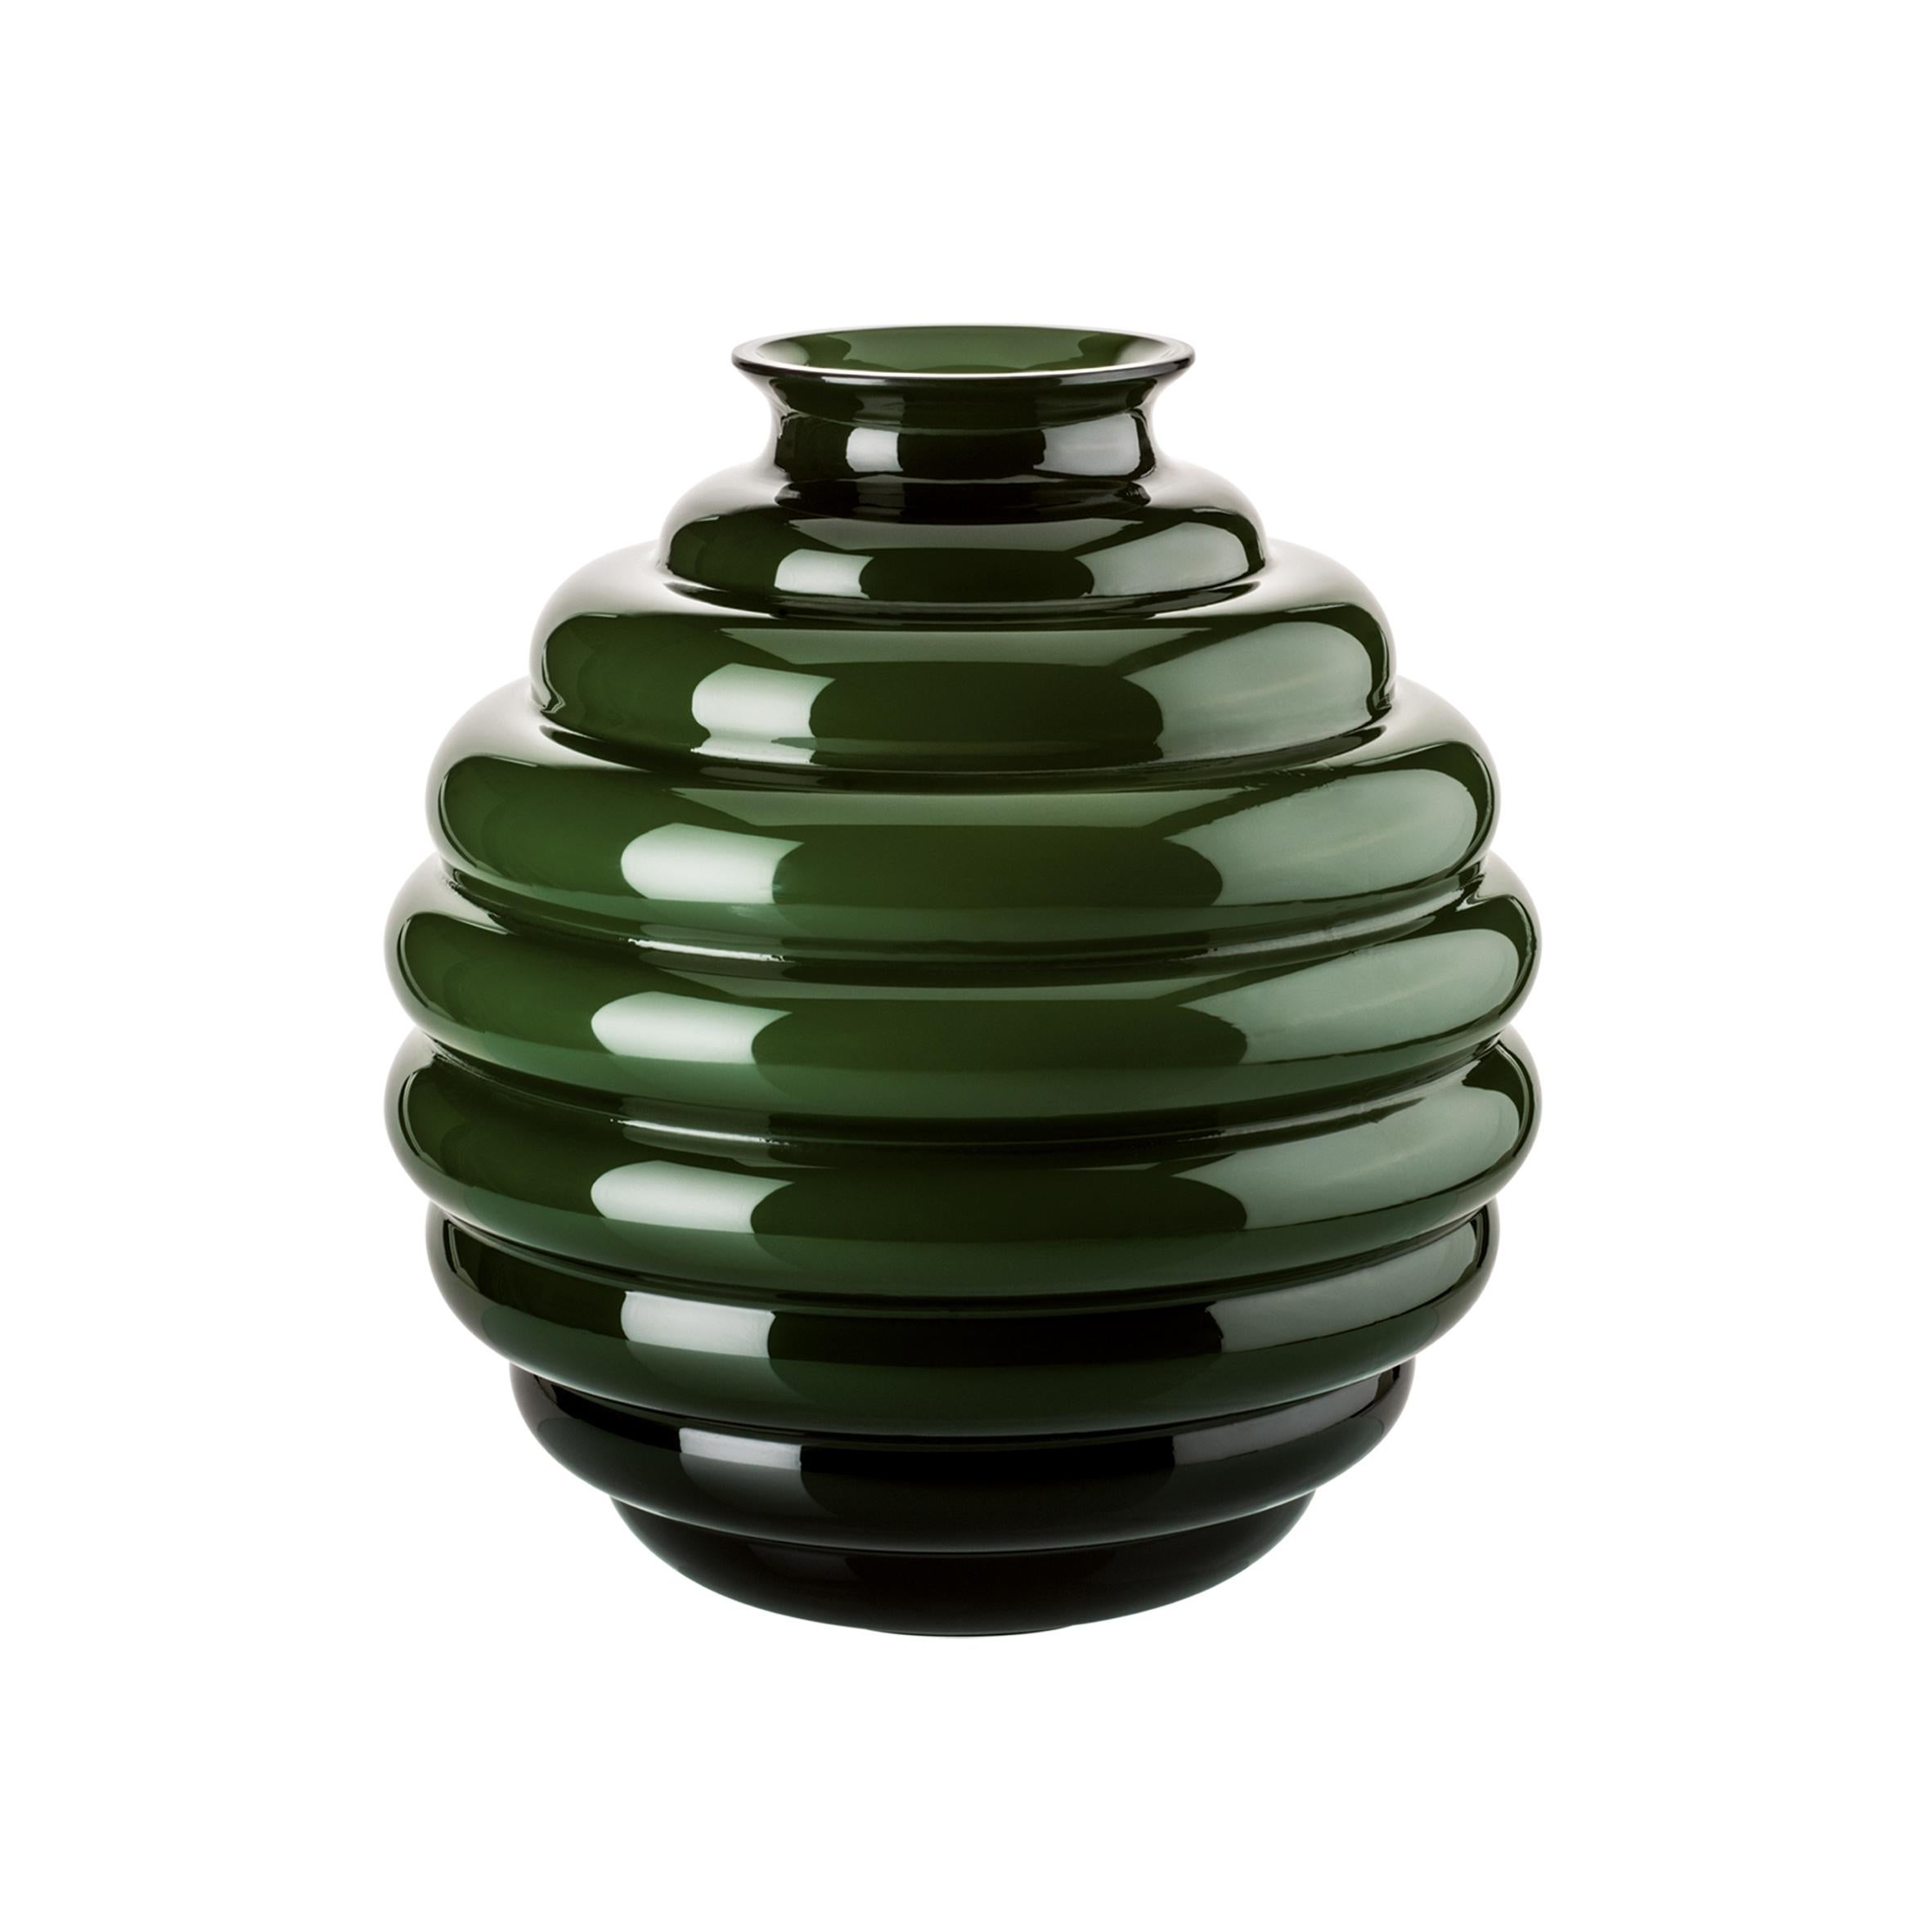 Vase en verre Venini en vert pomme conçu par Napoleone Martinuzzi en 1930. Parfait pour la décoration d'intérieur, en tant que récipient ou élément de décoration pour n'importe quelle pièce. Egalement disponible dans d'autres couleurs sur